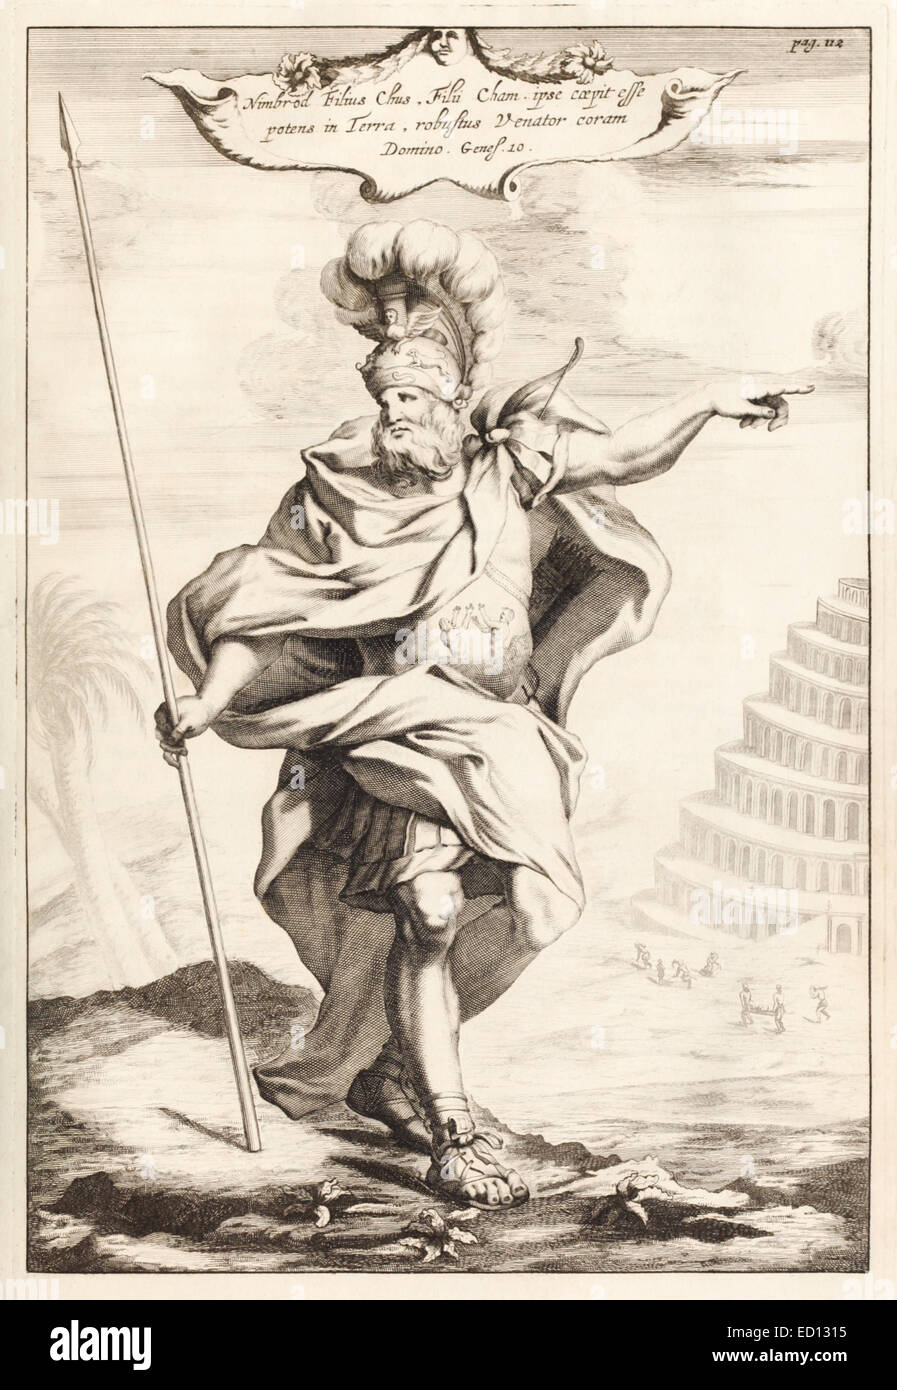 Nimrod, König von Schinar, 17. Jahrhundert Abbildung (Hinweis: der Turmbau zu Babel im Hintergrund). Siehe Beschreibung für mehr Informationen. Stockfoto